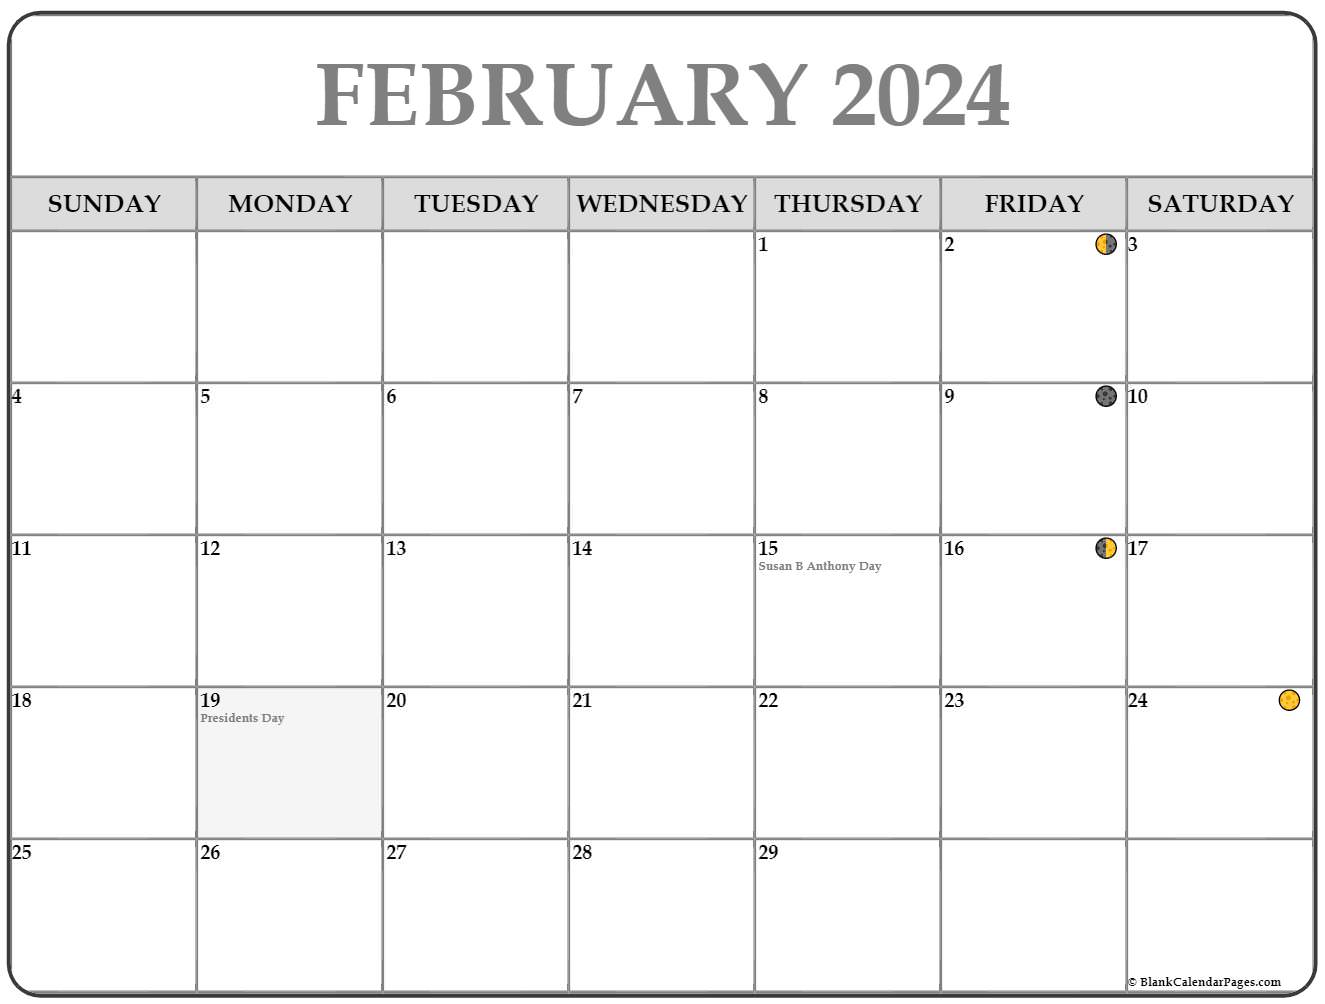 lunar calendar february 2021 February 2021 Lunar Calendar Moon Phase Calendar lunar calendar february 2021